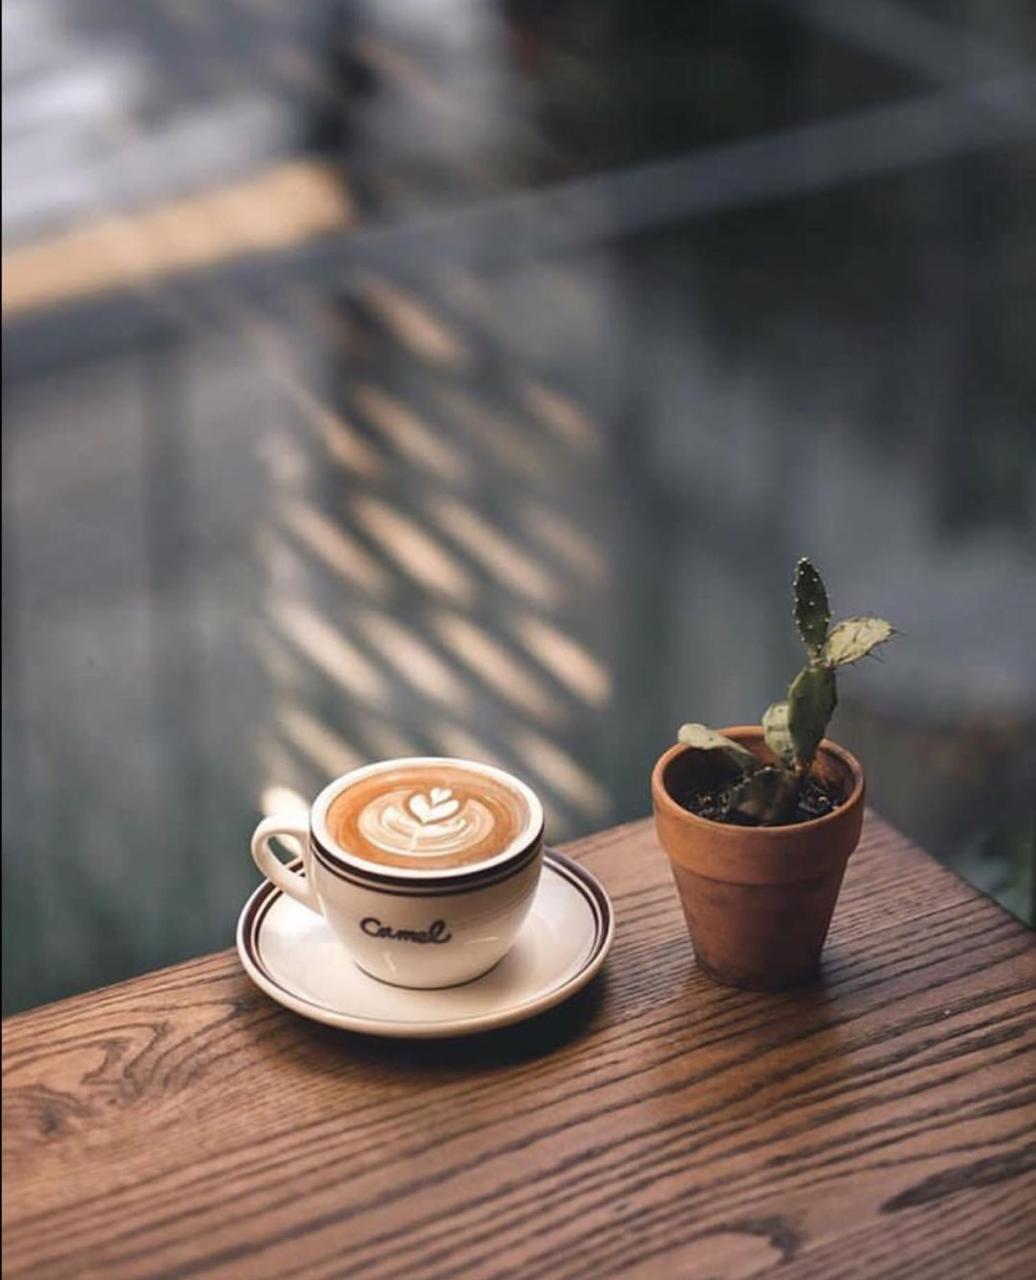 Hình ảnh uống cà phê một mình vào buổi sáng